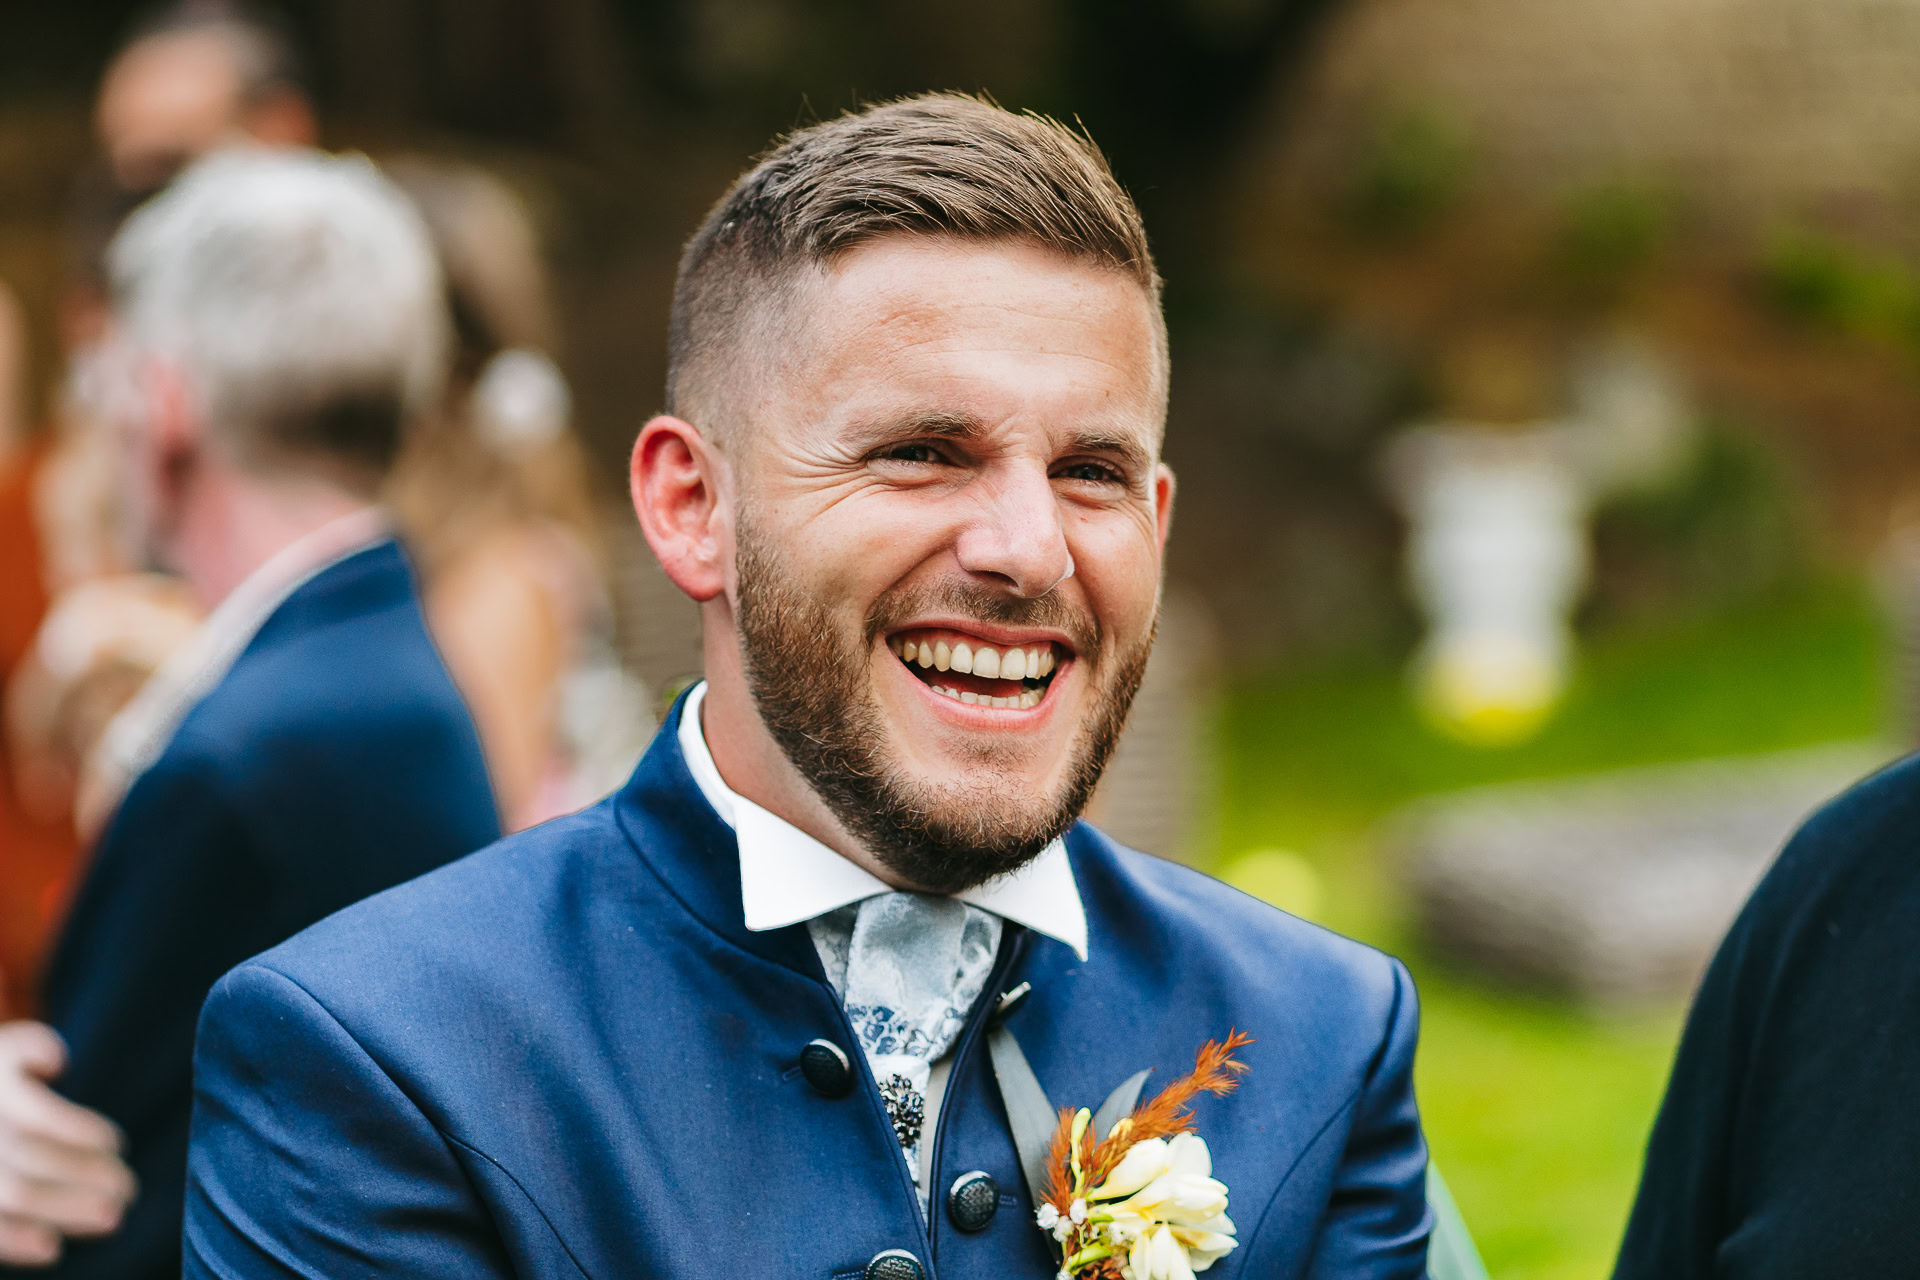 Un homme aux cheveux courts et à la barbe sourit largement en portant un costume bleu avec une boutonnière sur cette photo de reportage de mariage. L’arrière-plan est flou avec des personnages et de la verdure, capturant l’essence de cette joyeuse occasion.